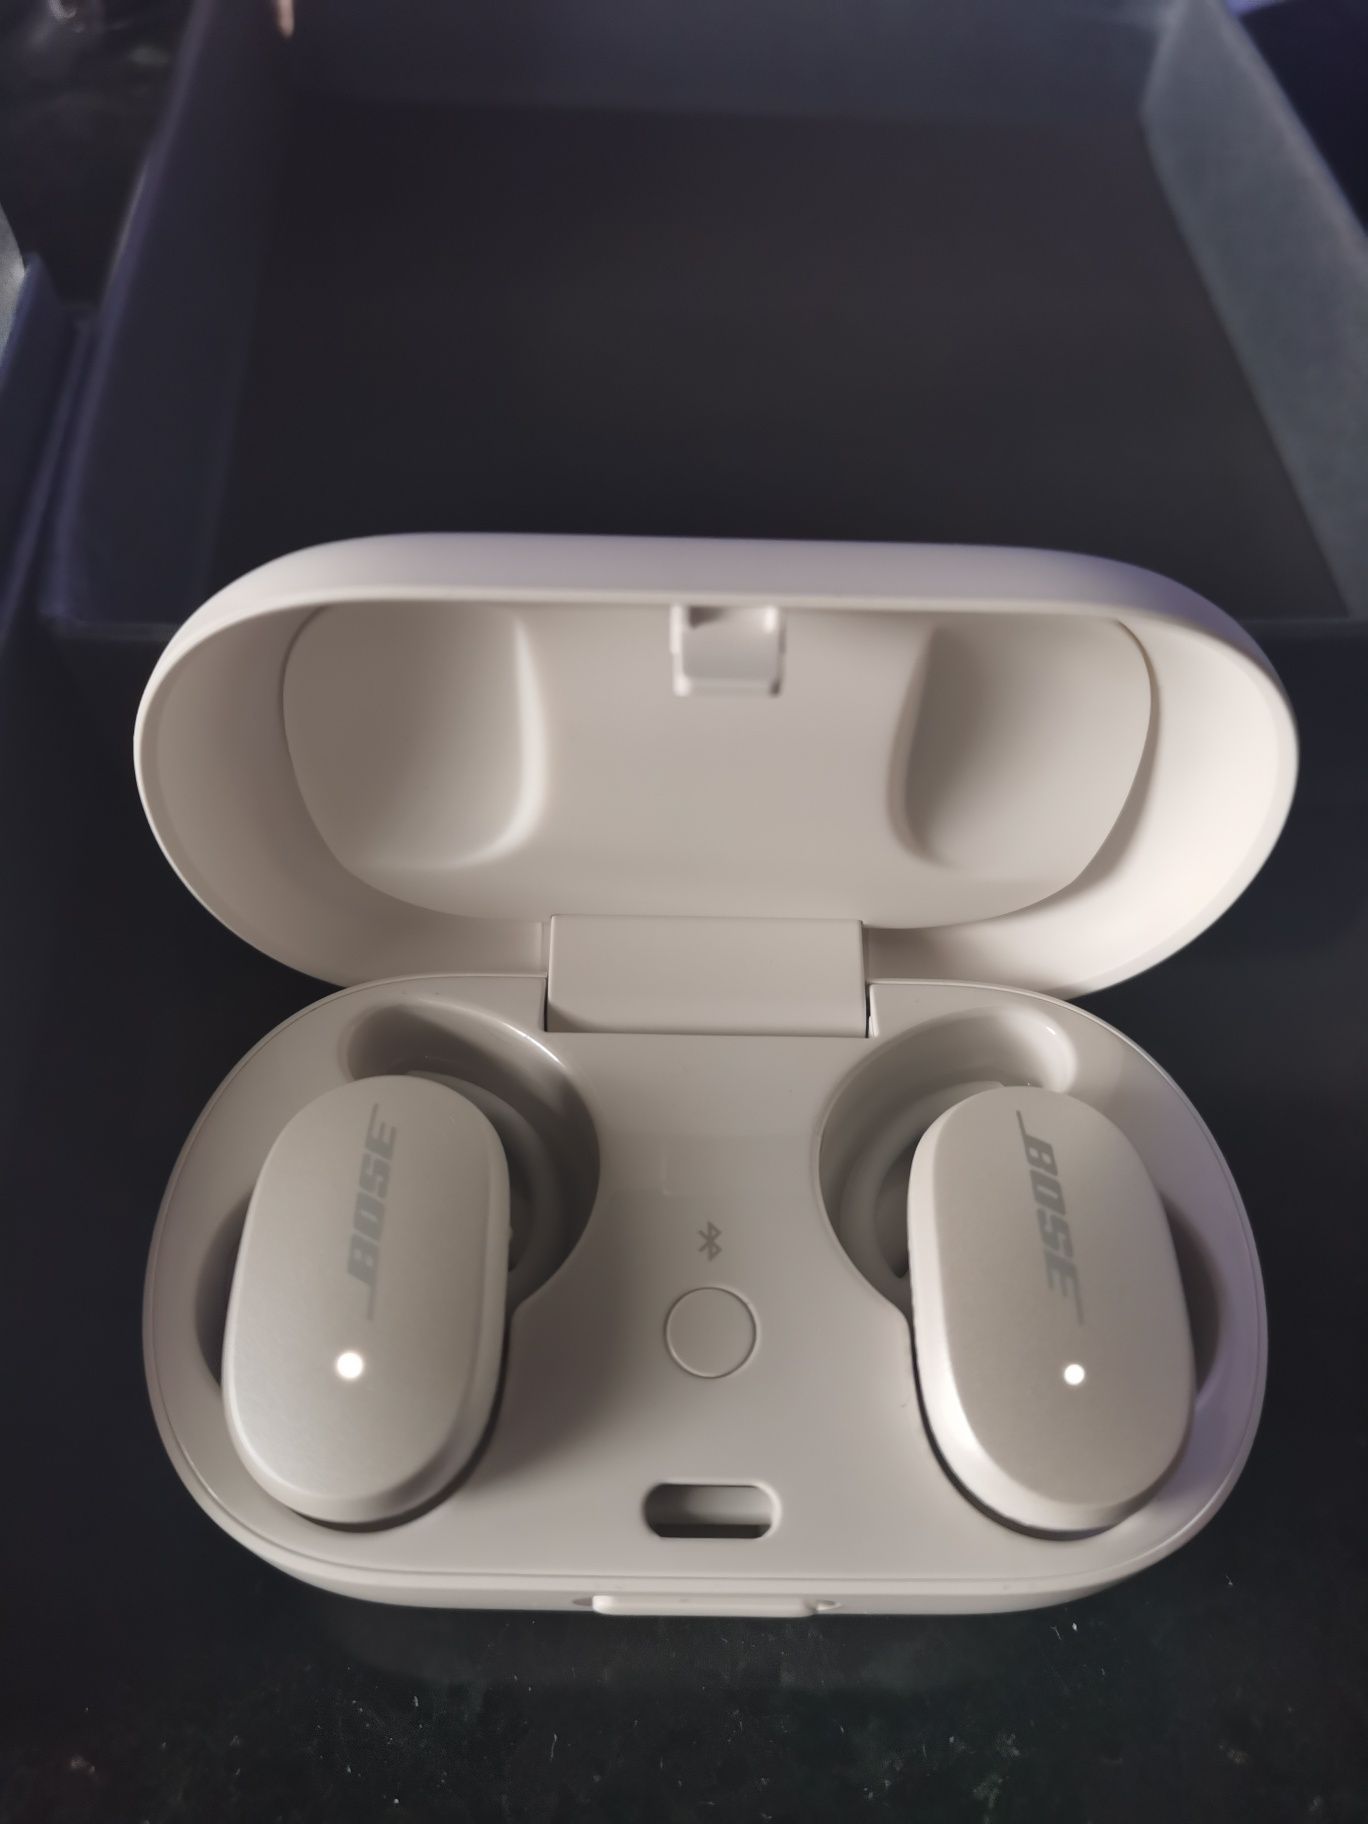 Bose QuietConfort Earbuds rigorosamente iguais a novos na caixa.